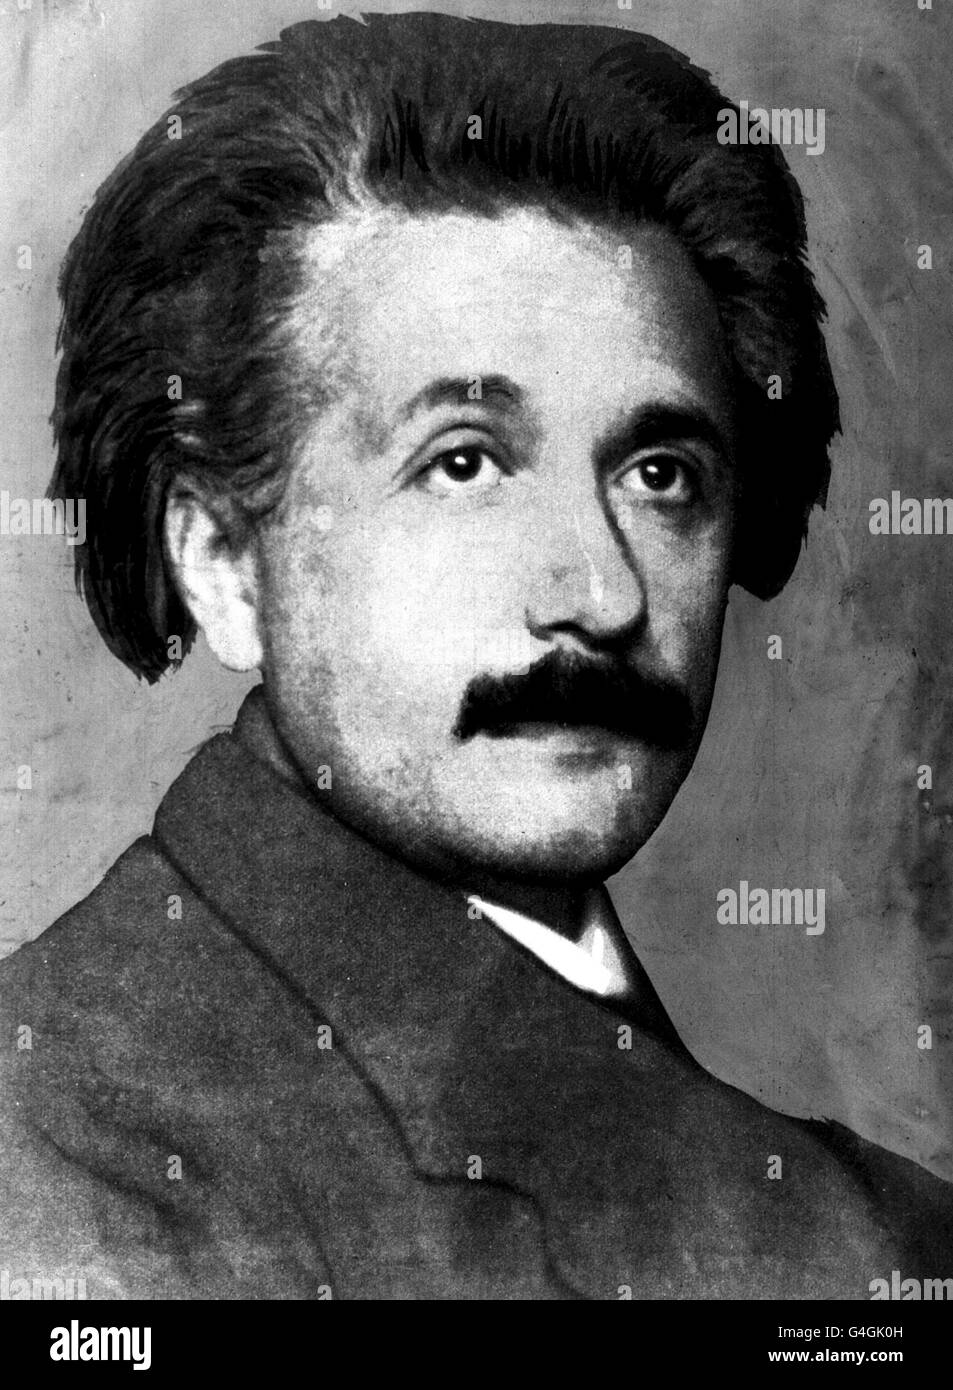 MÄRZ 14: An diesem Tag im Jahr 1879 wurde der Wissenschaftler Albert Einstein in Ulm geboren. Seine Jugend verbrachte er in München, wo seine Familie ein kleines Geschäft besaß. Er sprach nicht bis zum Alter von 3 Jahren, aber auch als Jugendlicher zeigte er eine brillante Neugier auf die Natur und die Fähigkeit zu verstehen, schwierige mathematische Konzepte. Er ist vielleicht der bekannteste Wissenschaftler des 20. Jahrhunderts. EIN BIBLIOTHEKSFOTO VON PROFESSOR ALBERT EINSTEIN, C1921. 19/03/01: Eine neue Umfrage veröffentlicht zeigt, dass britische Menschen mehr von den Wissenschaftlern Marie Curie und Albert Einstein als Prominente Posh und Becks inspiriert sind. * Die Mori Stockfoto